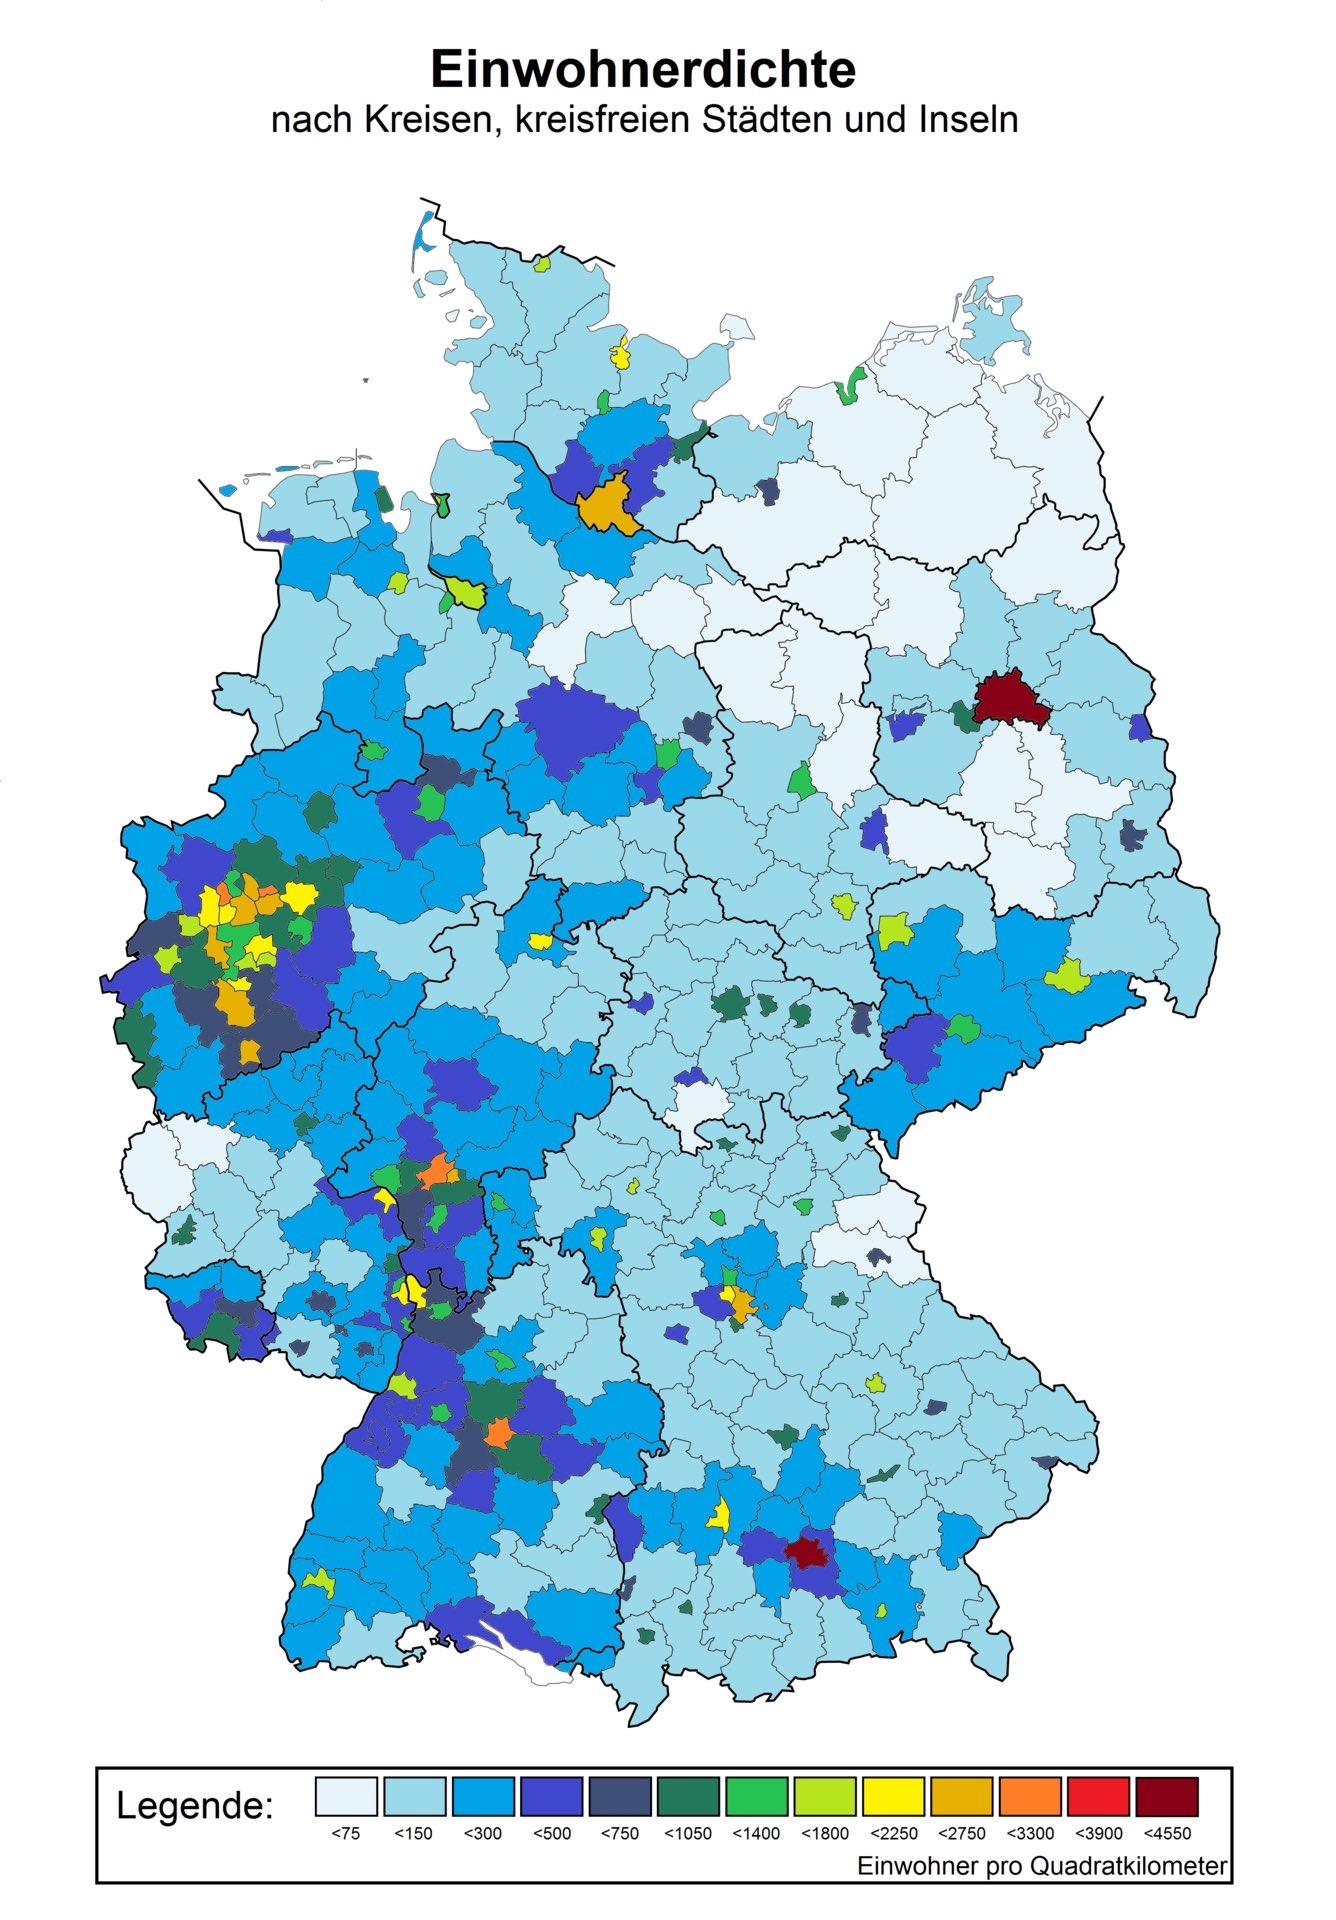 ドイツ地図bot Pa Twitter ドイツの人口密度 これマジ 西に比べて東が貧弱すぎるだろ T Co Kyosji6g2a Twitter